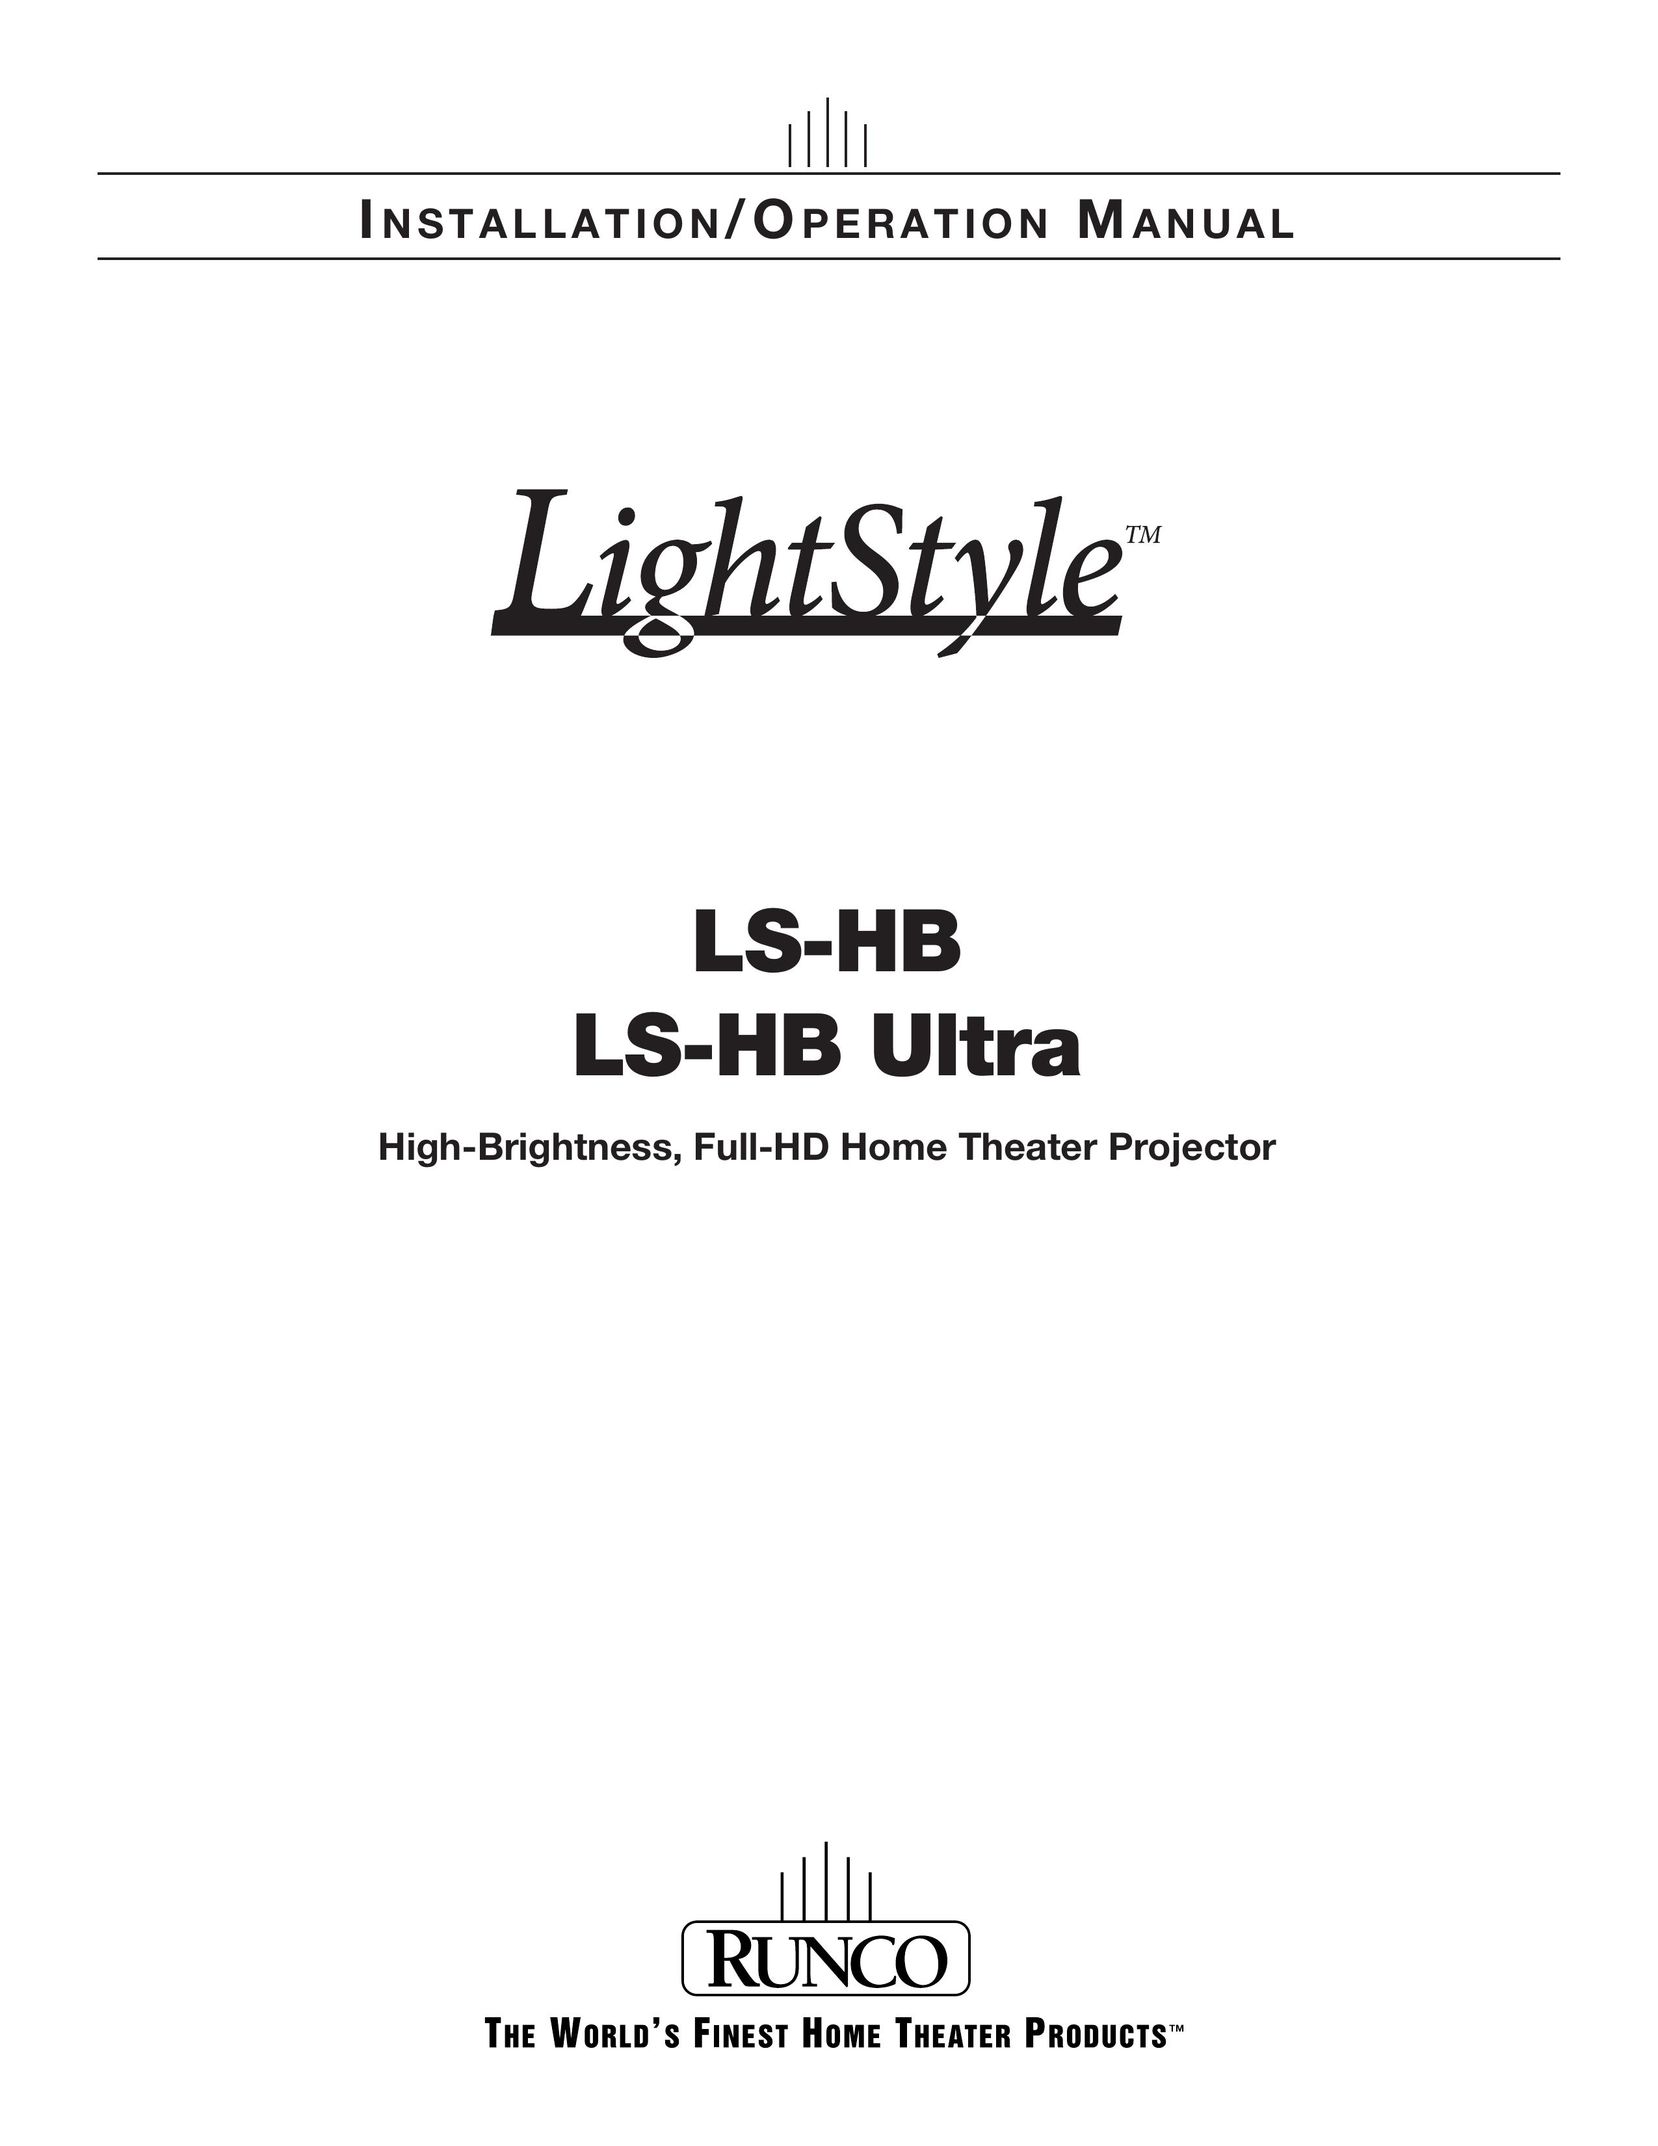 Runco LS-HB Ultra Home Theater Screen User Manual